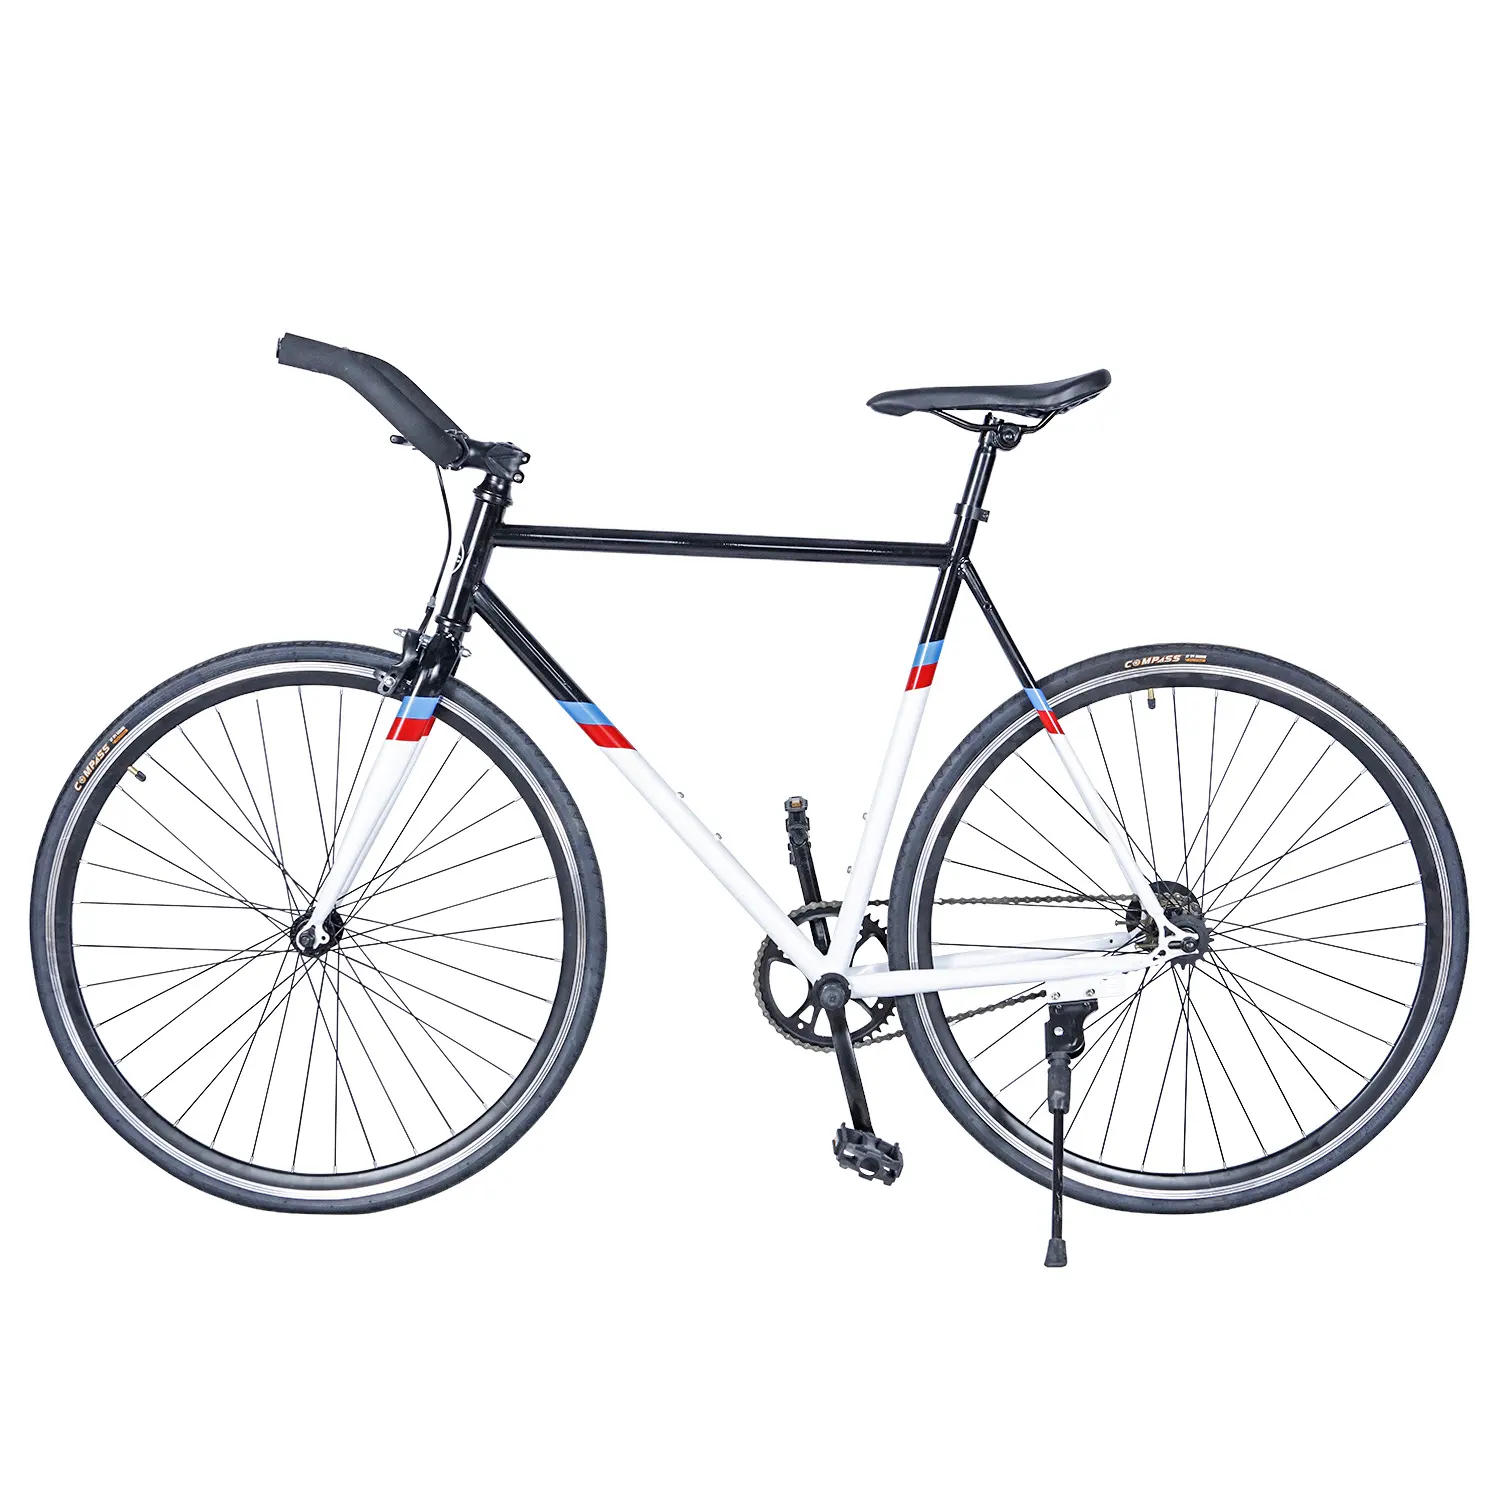 2021 vendita calda bicicletta a pista fissa a singola velocità per bici/bici fixie da corsa mini 700c economica in vendita/bici a scatto fisso approvata ce